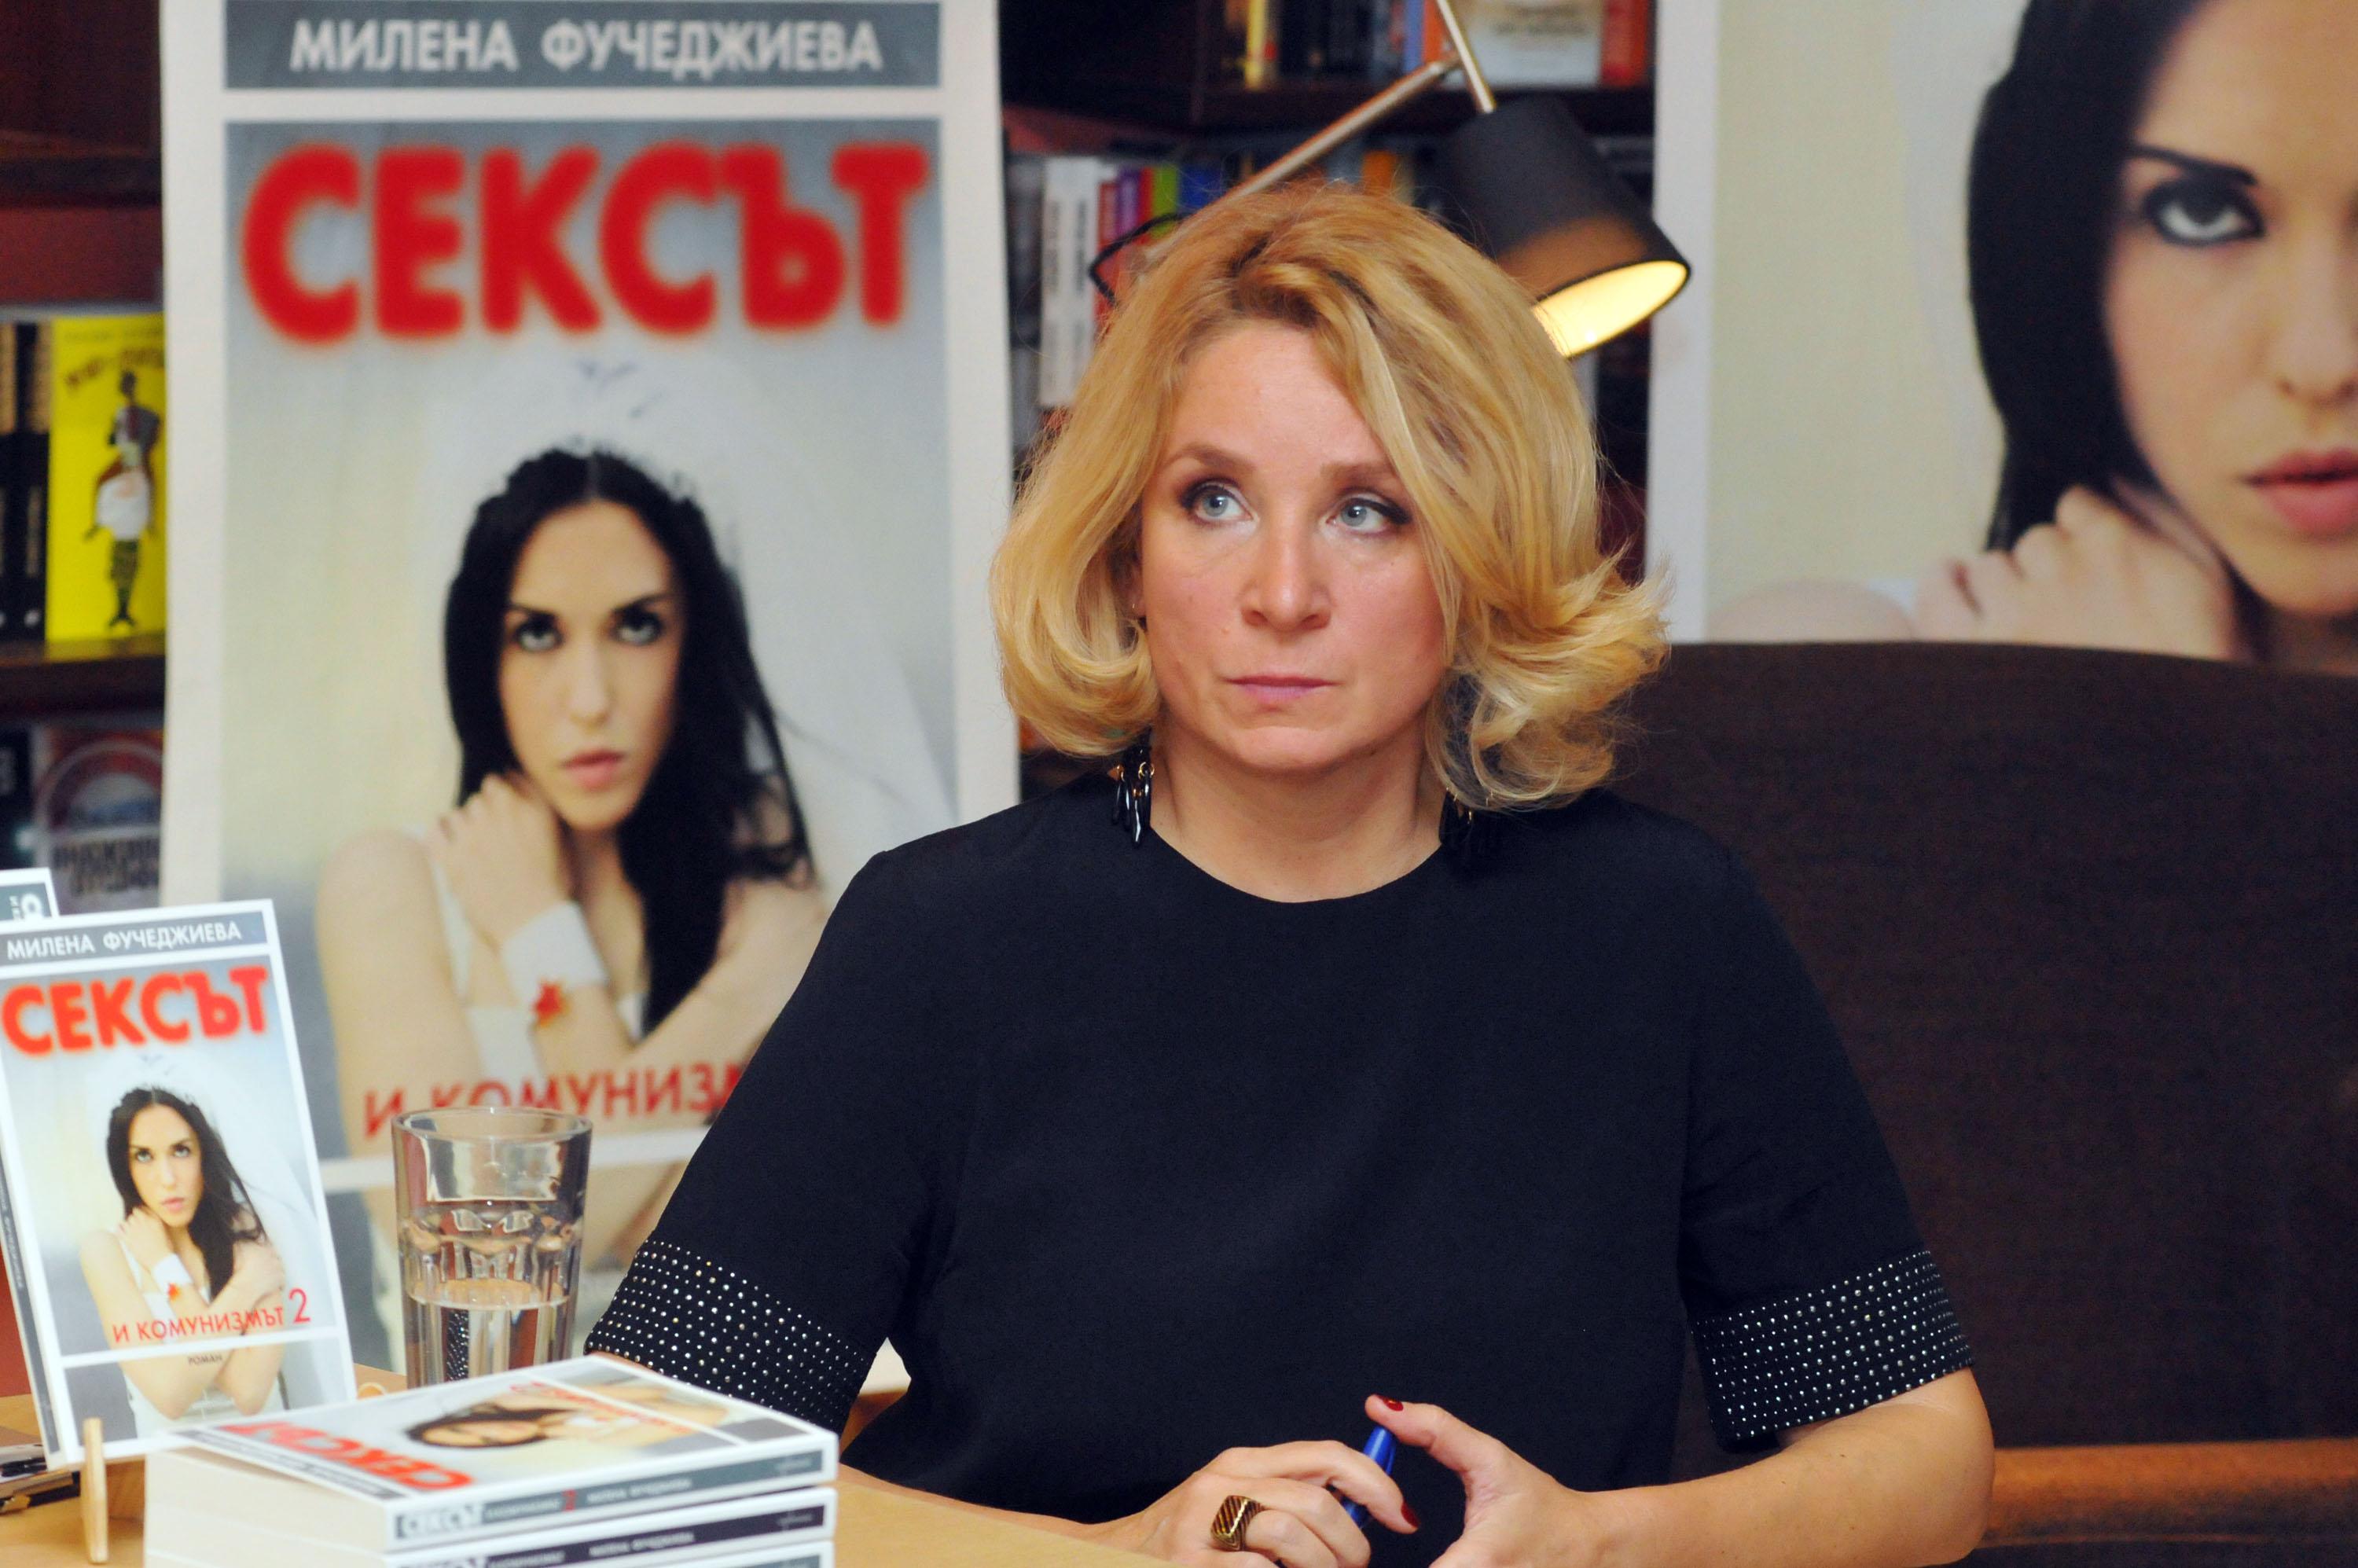 Милена Фучеджиева представи романа „Сексът и комунизмът 2“